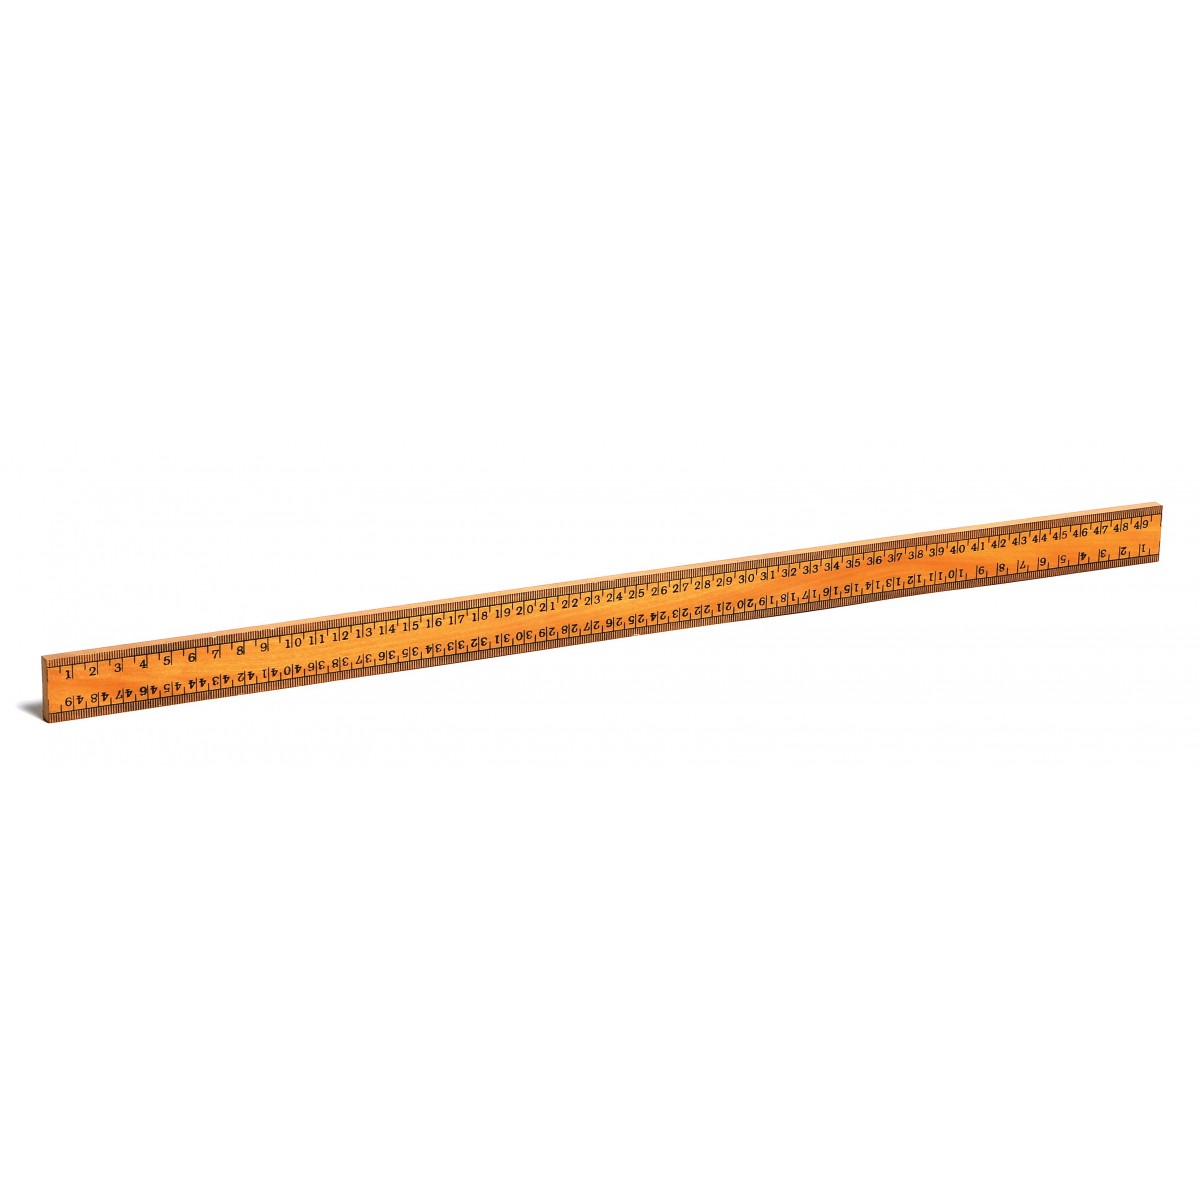 Half-Meterstick, 50 cm, hardwood